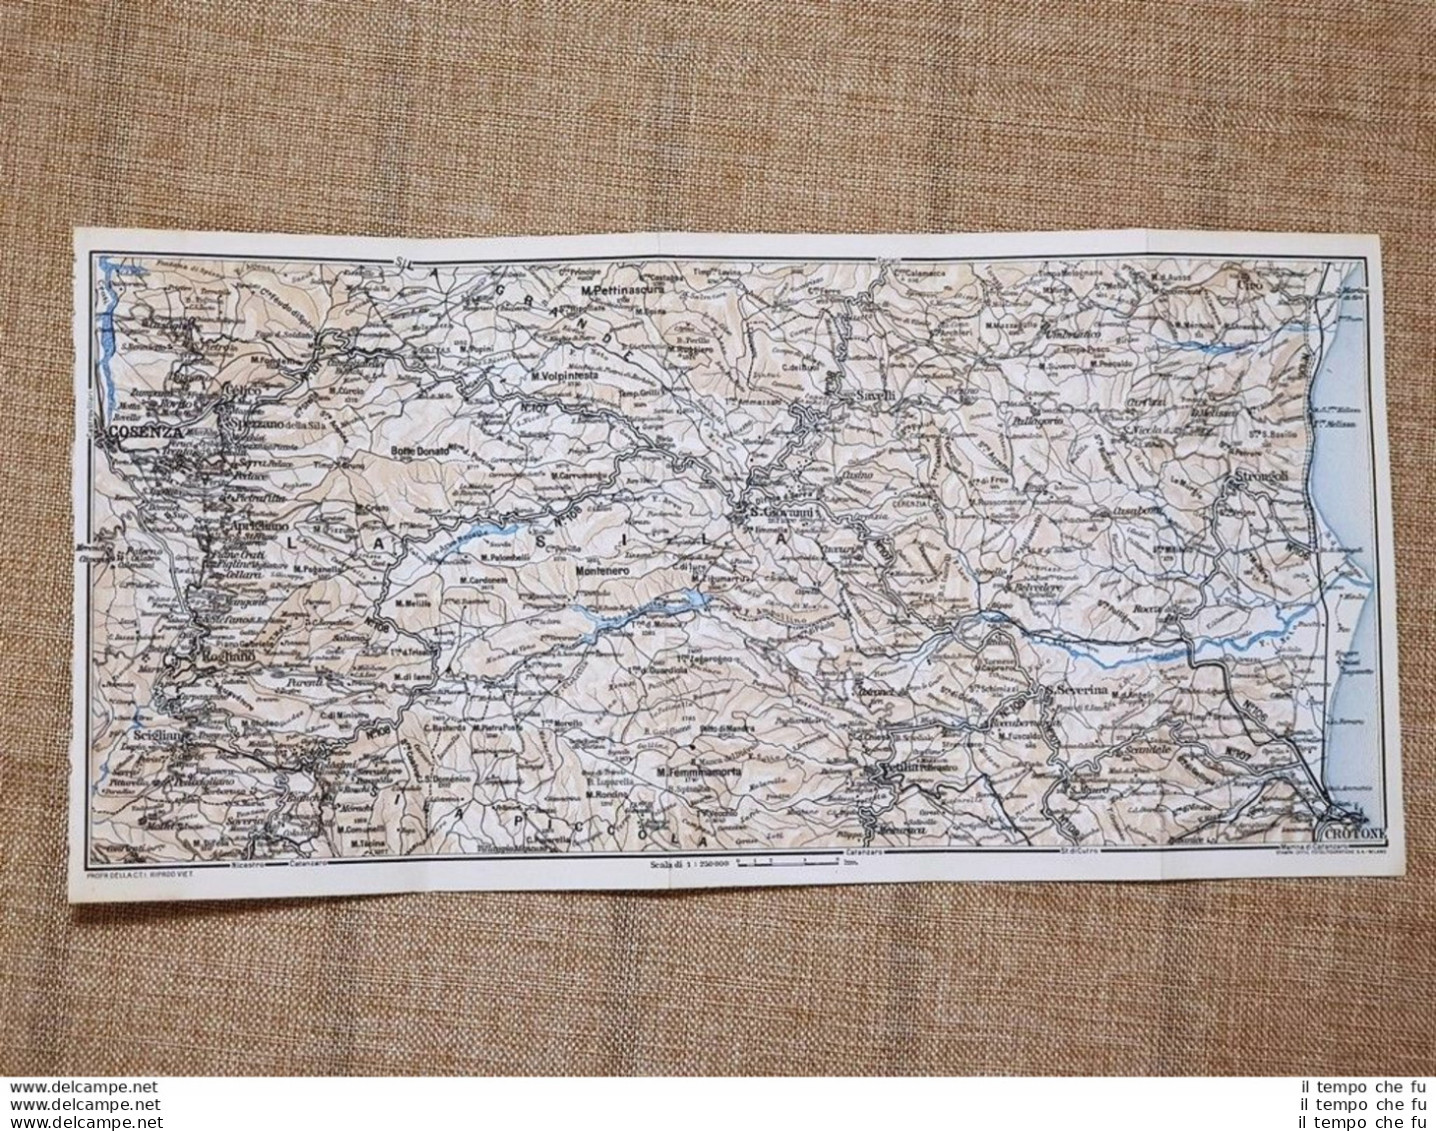 Carta Geografica O Mappa Del 1937 Crotone Montenero Cosenza Calabria T.C.I. - Geographical Maps